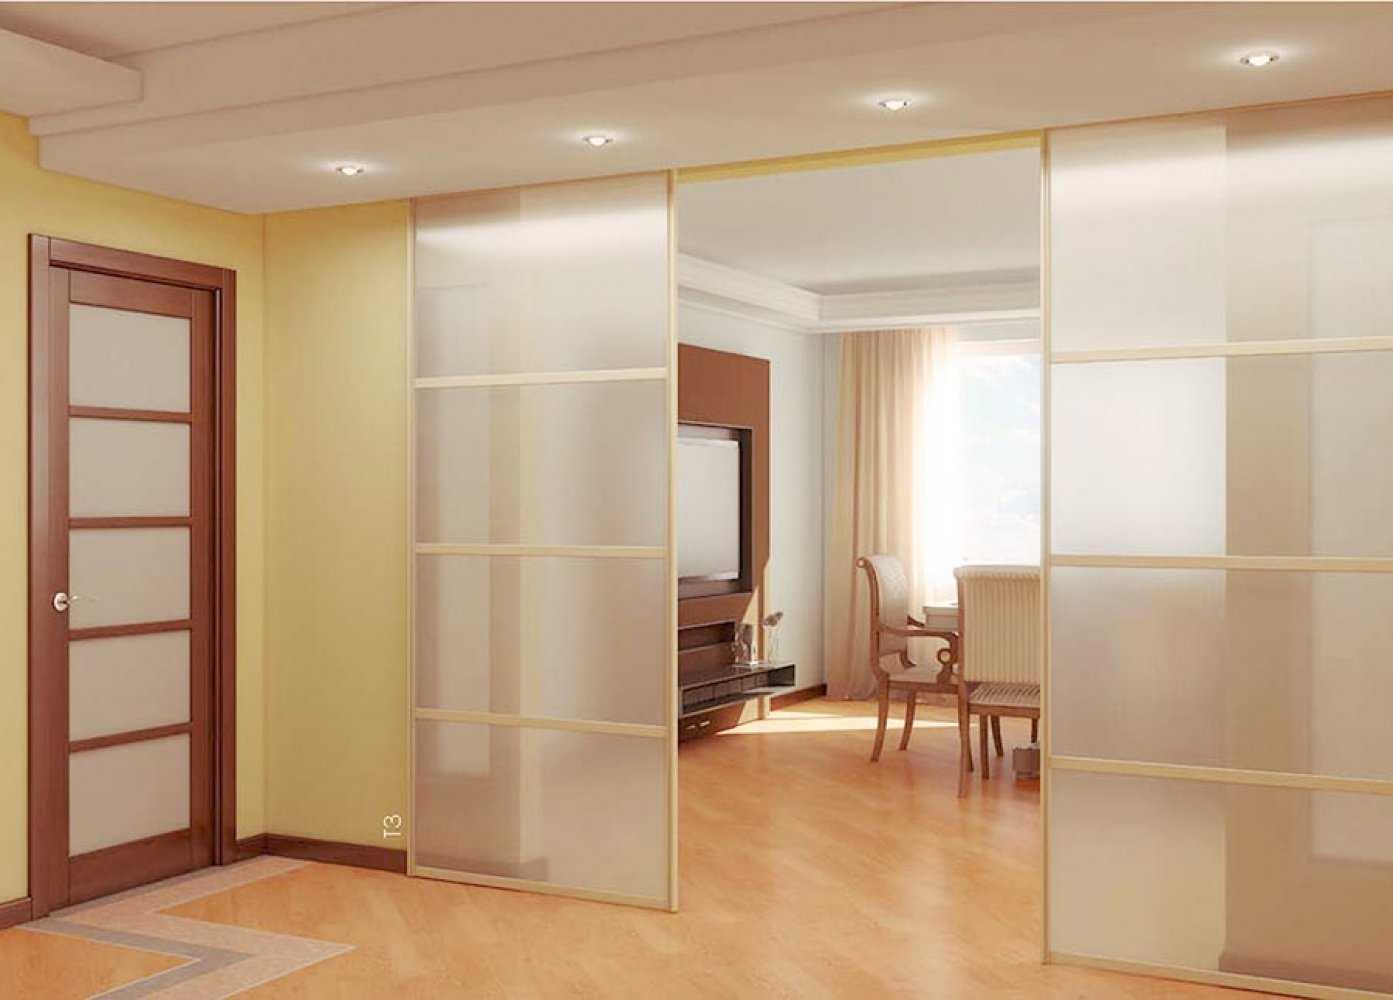 20 шикарных идей использования перегородок для зонирования пространства в комнате — лучшие функциональные и декоративные решения